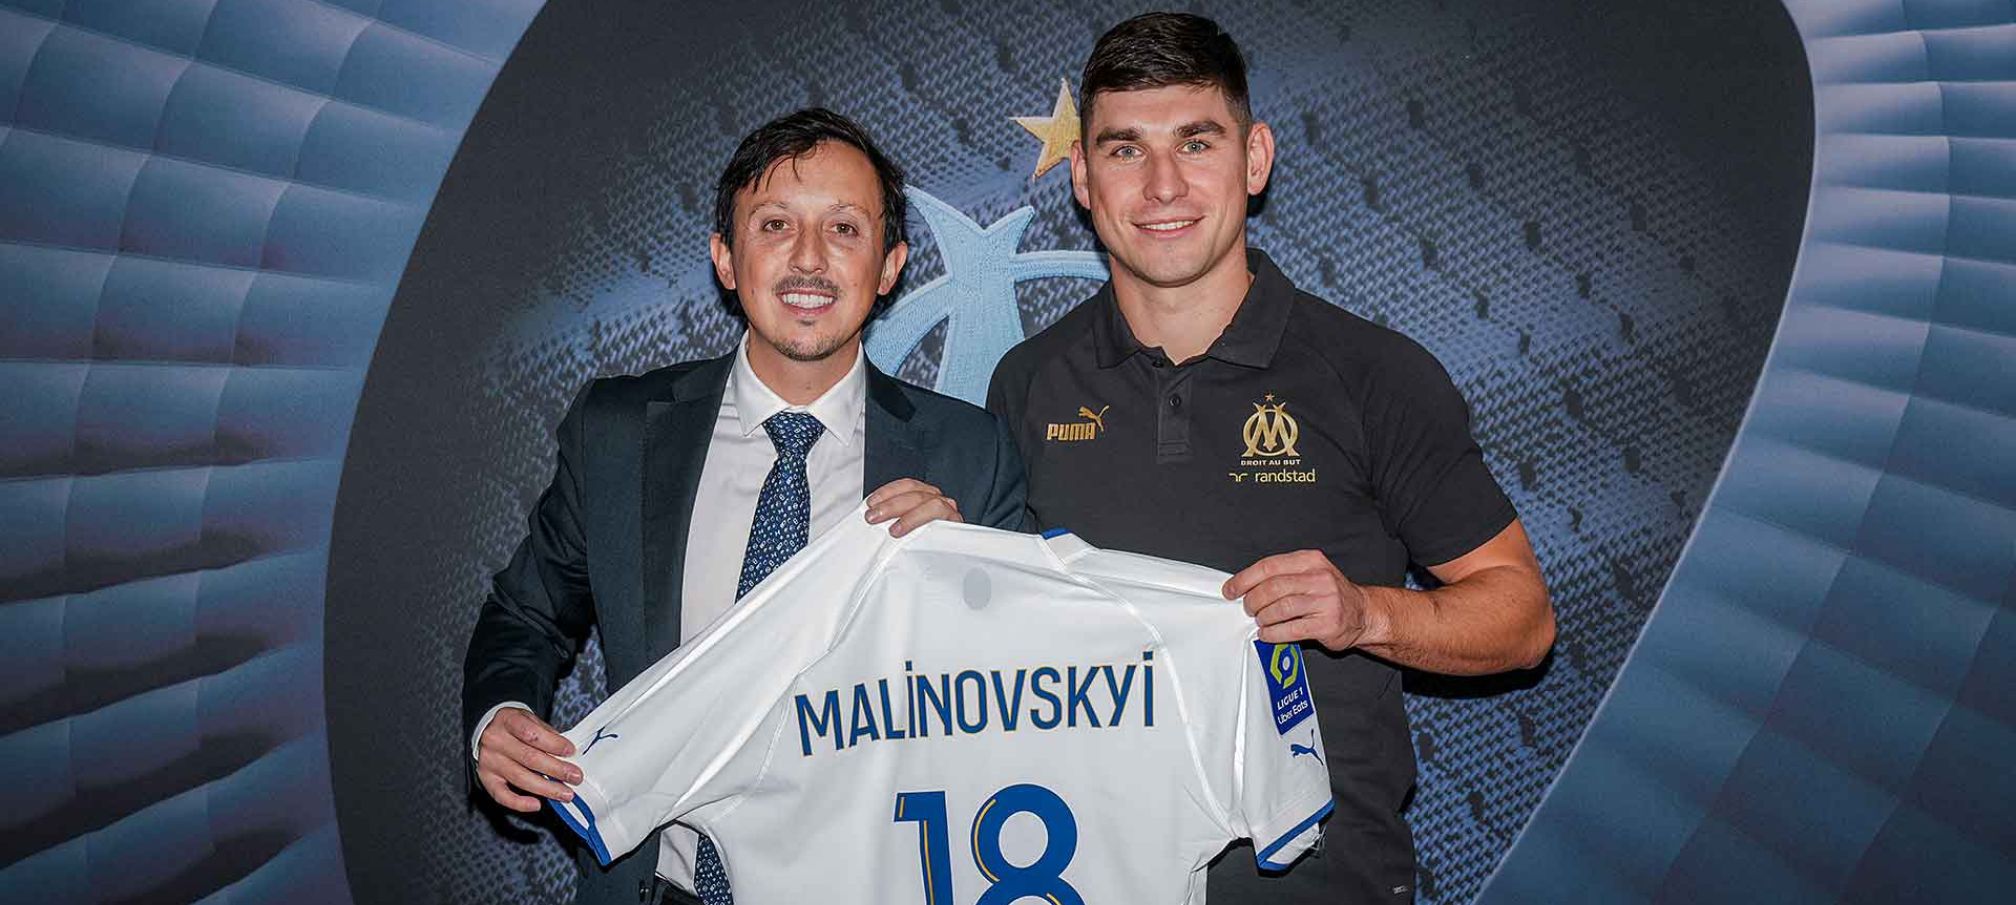 Malinovskyi đến Marseille theo dạng cho mượn từ Atalanta